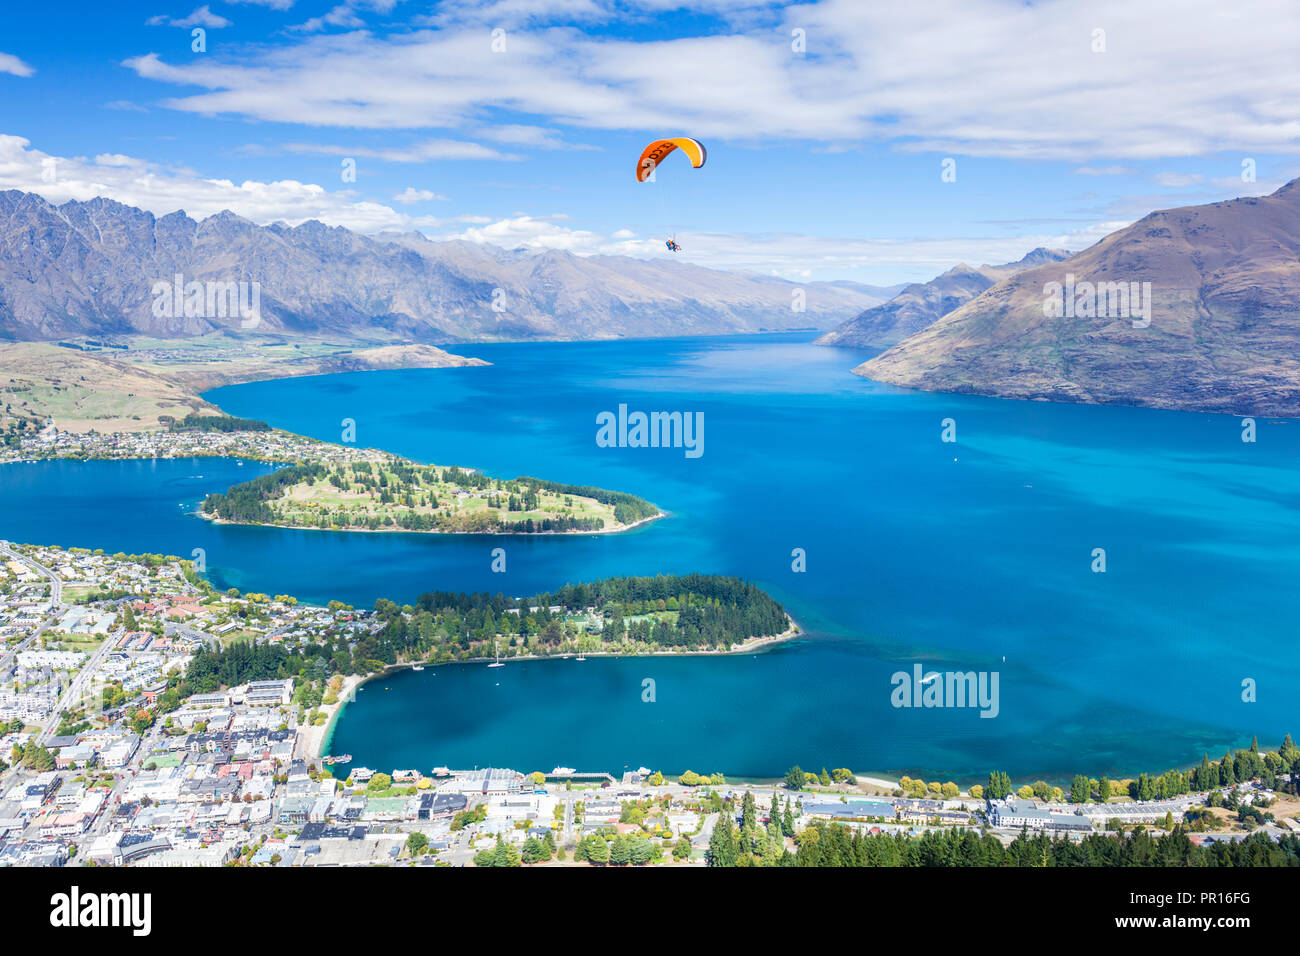 Vue aérienne de Queenstown, de parapente, le lac Wakatipu et les montagnes Remarkables, Queenstown, Otago, île du Sud, Nouvelle-Zélande, Pacifique Banque D'Images